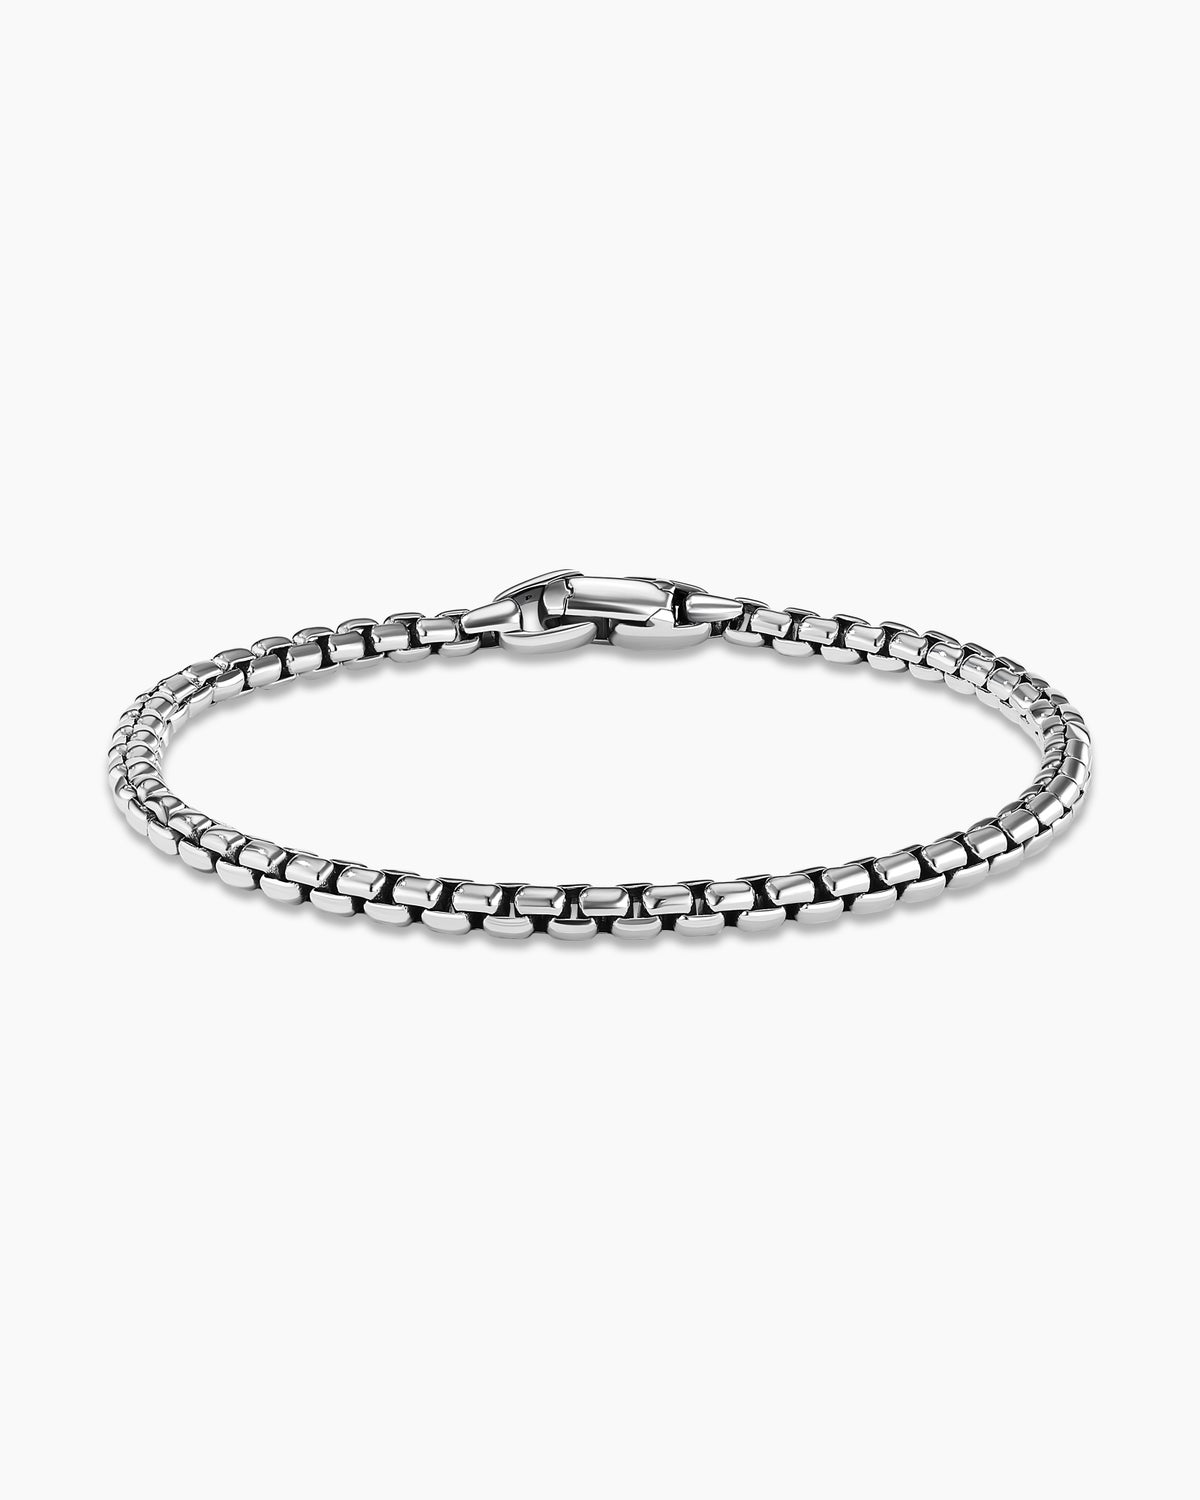 Shop Men's Chain Bracelets | David Yurman